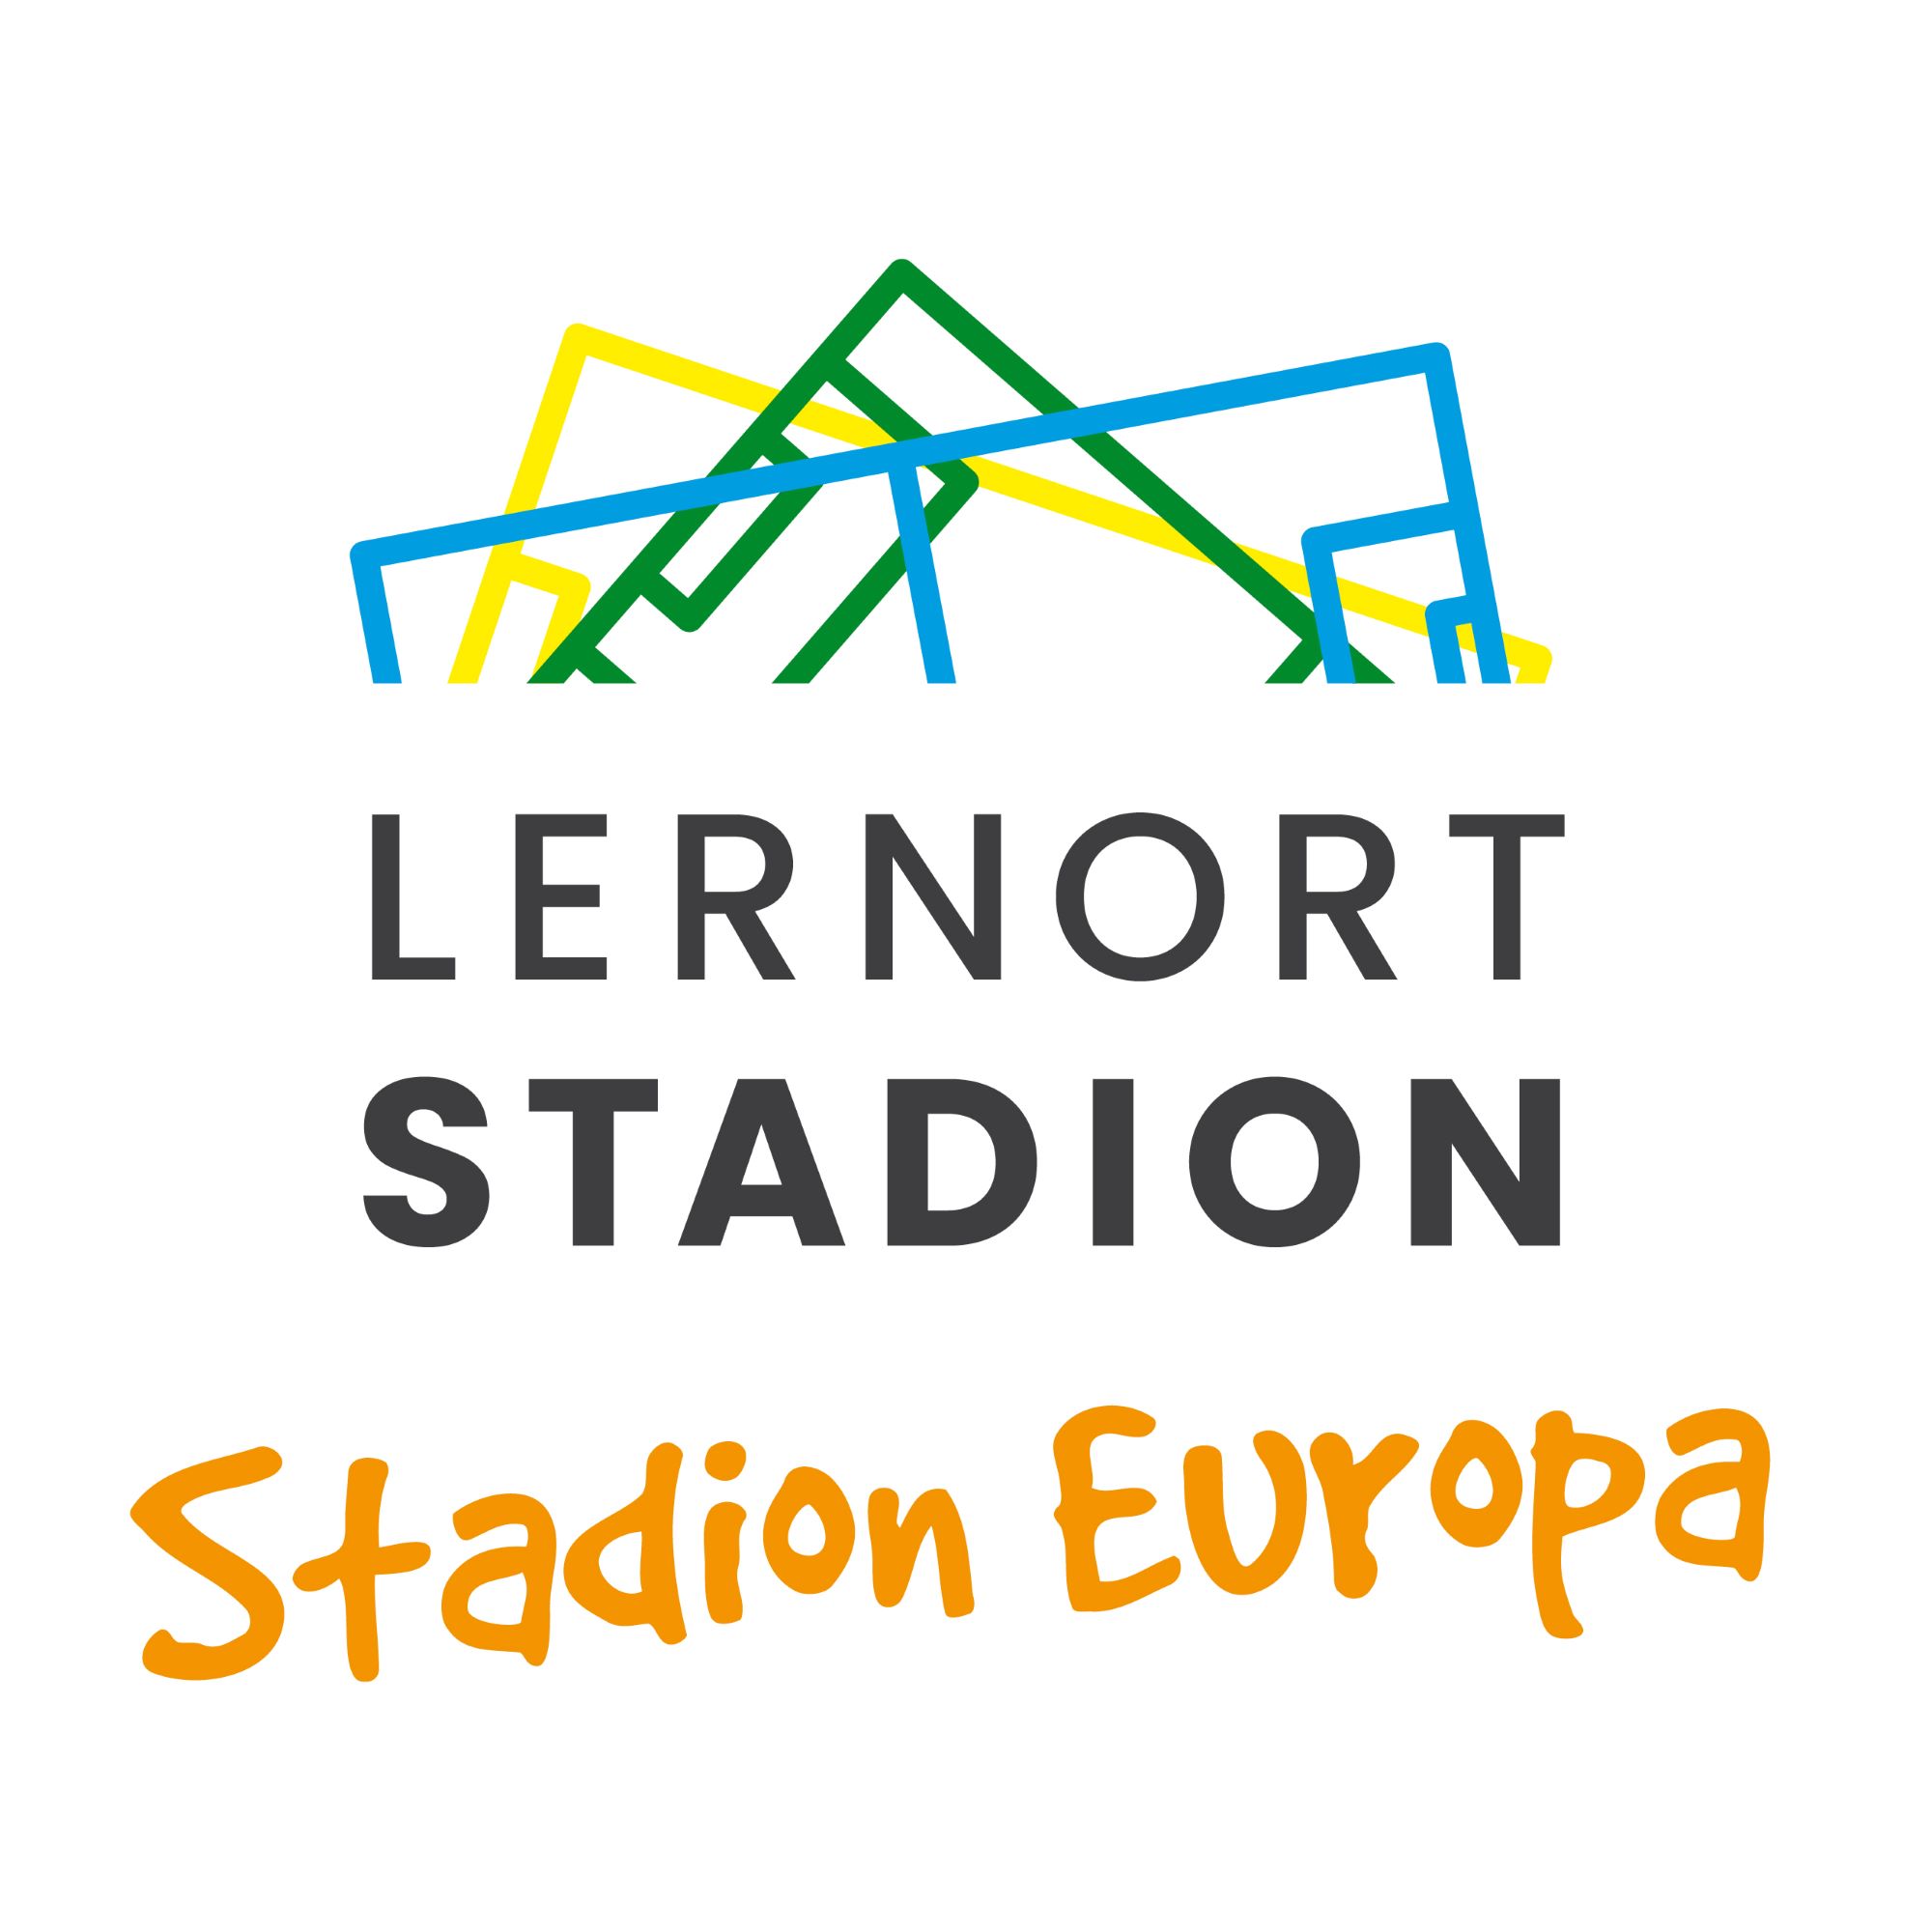 Stadion Europa - Jugendfestival für Europa und Zusammenhalt